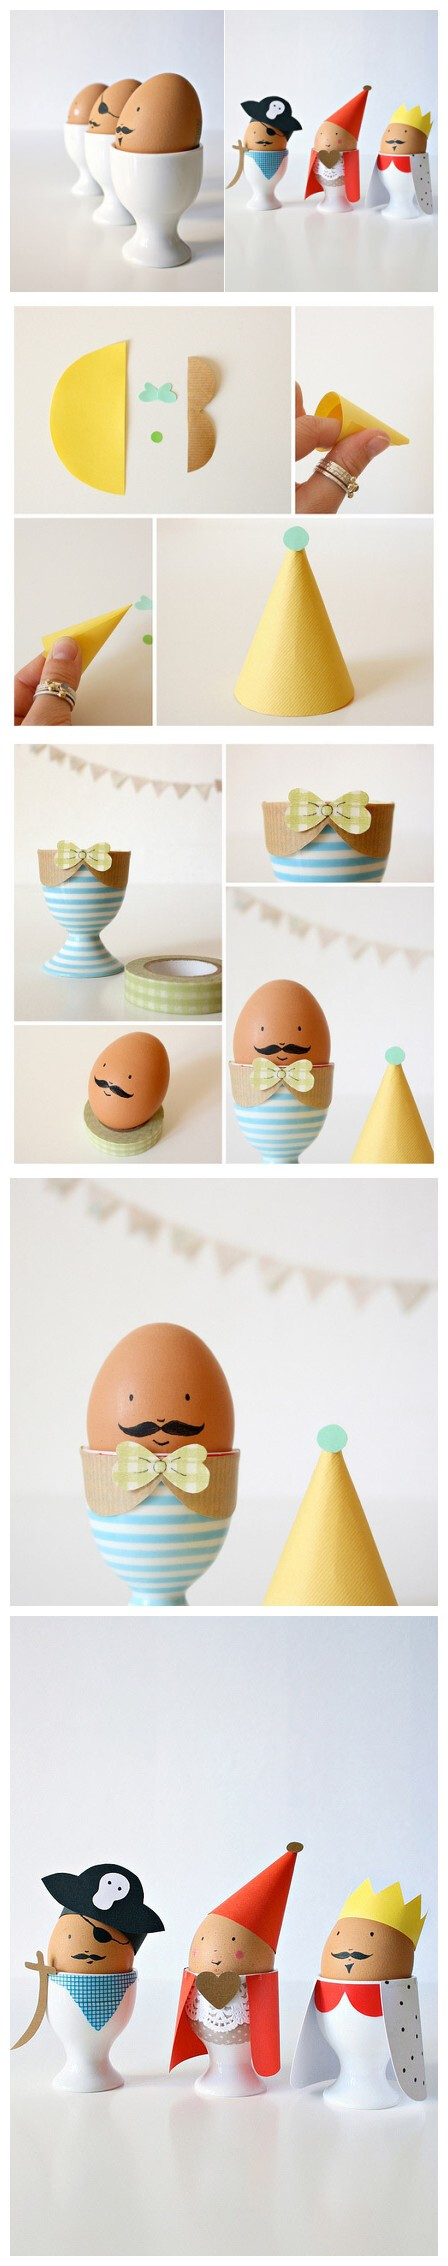 可爱有创意的鸡蛋造型设计